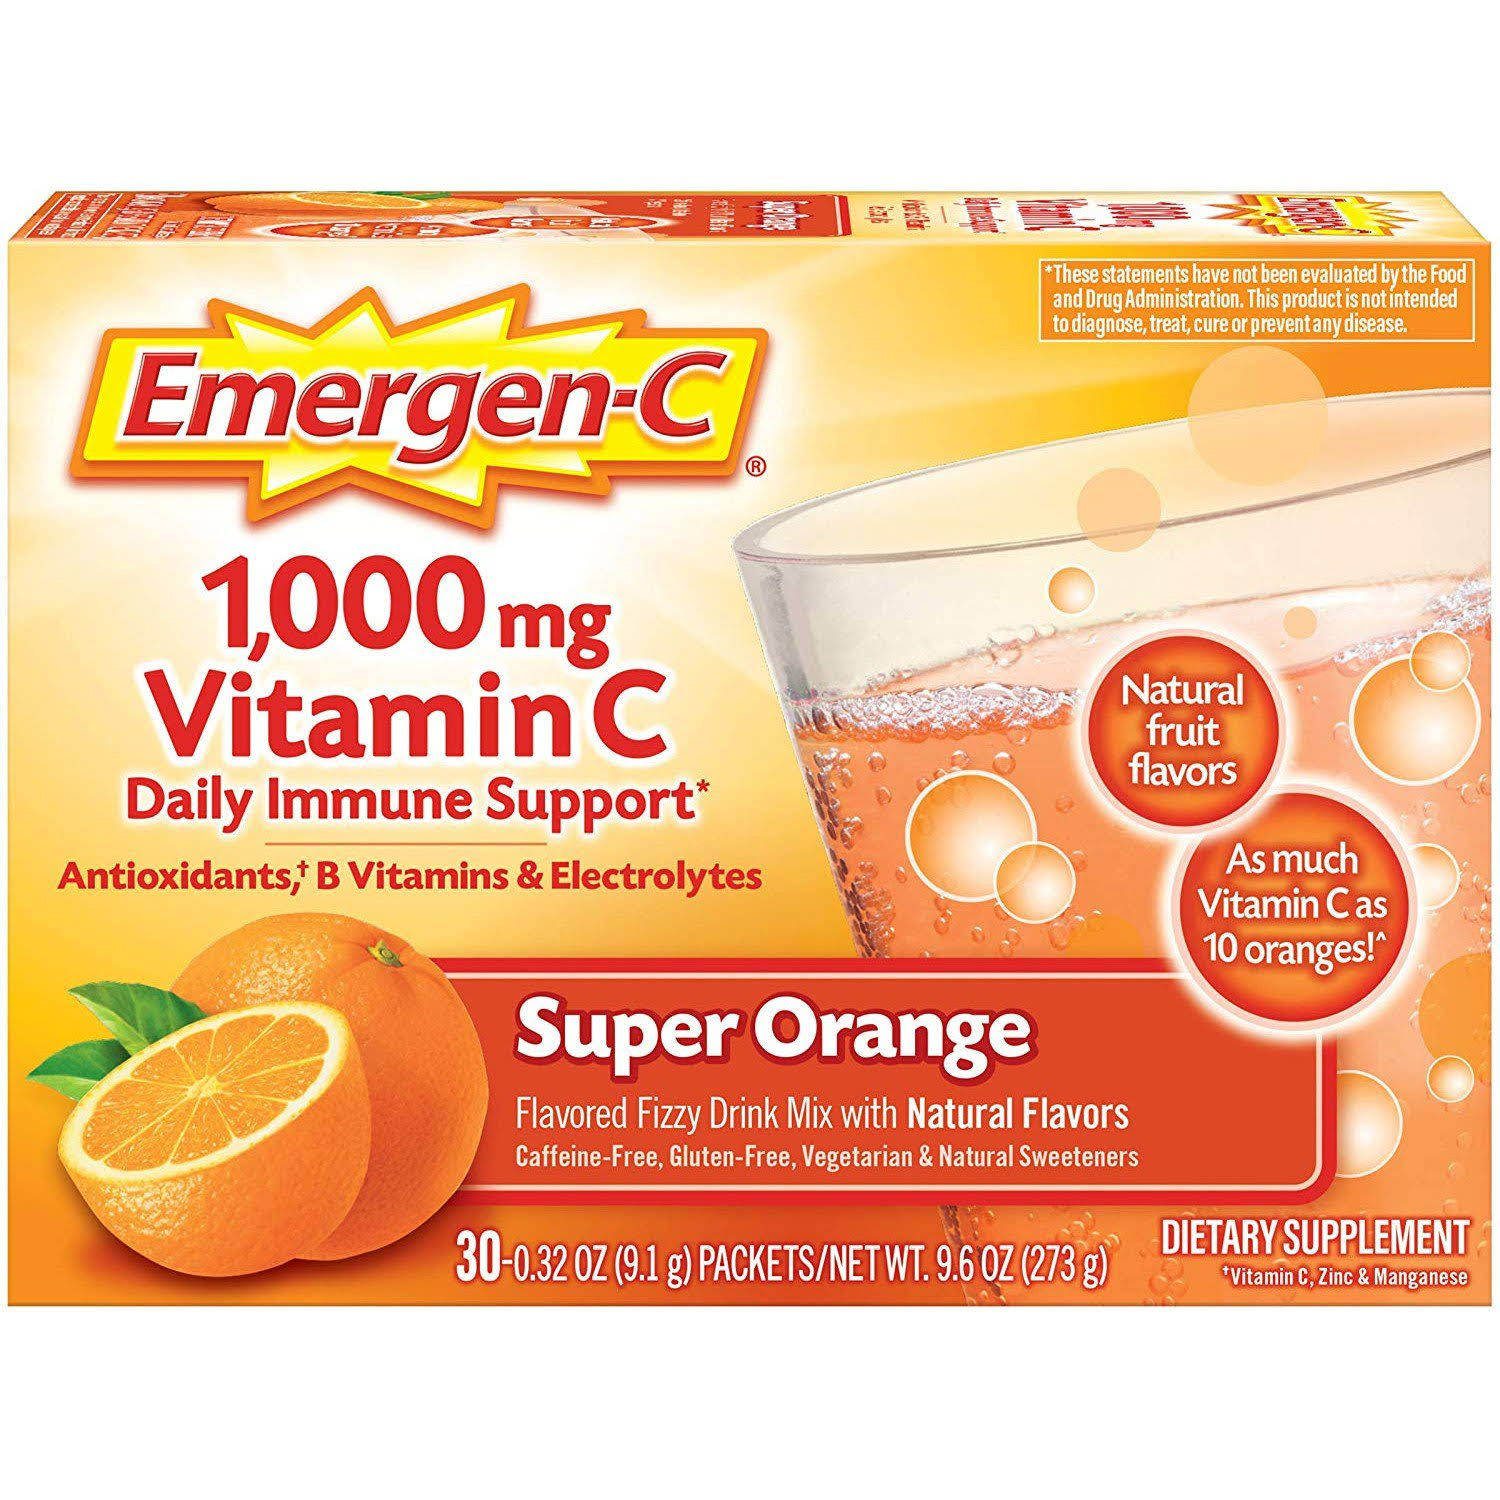 Emergen C Vitamin C Super Orange Flavored Fizzy Drink Mix Dietary Supplement - 1000mg, 0.32oz, 30pk